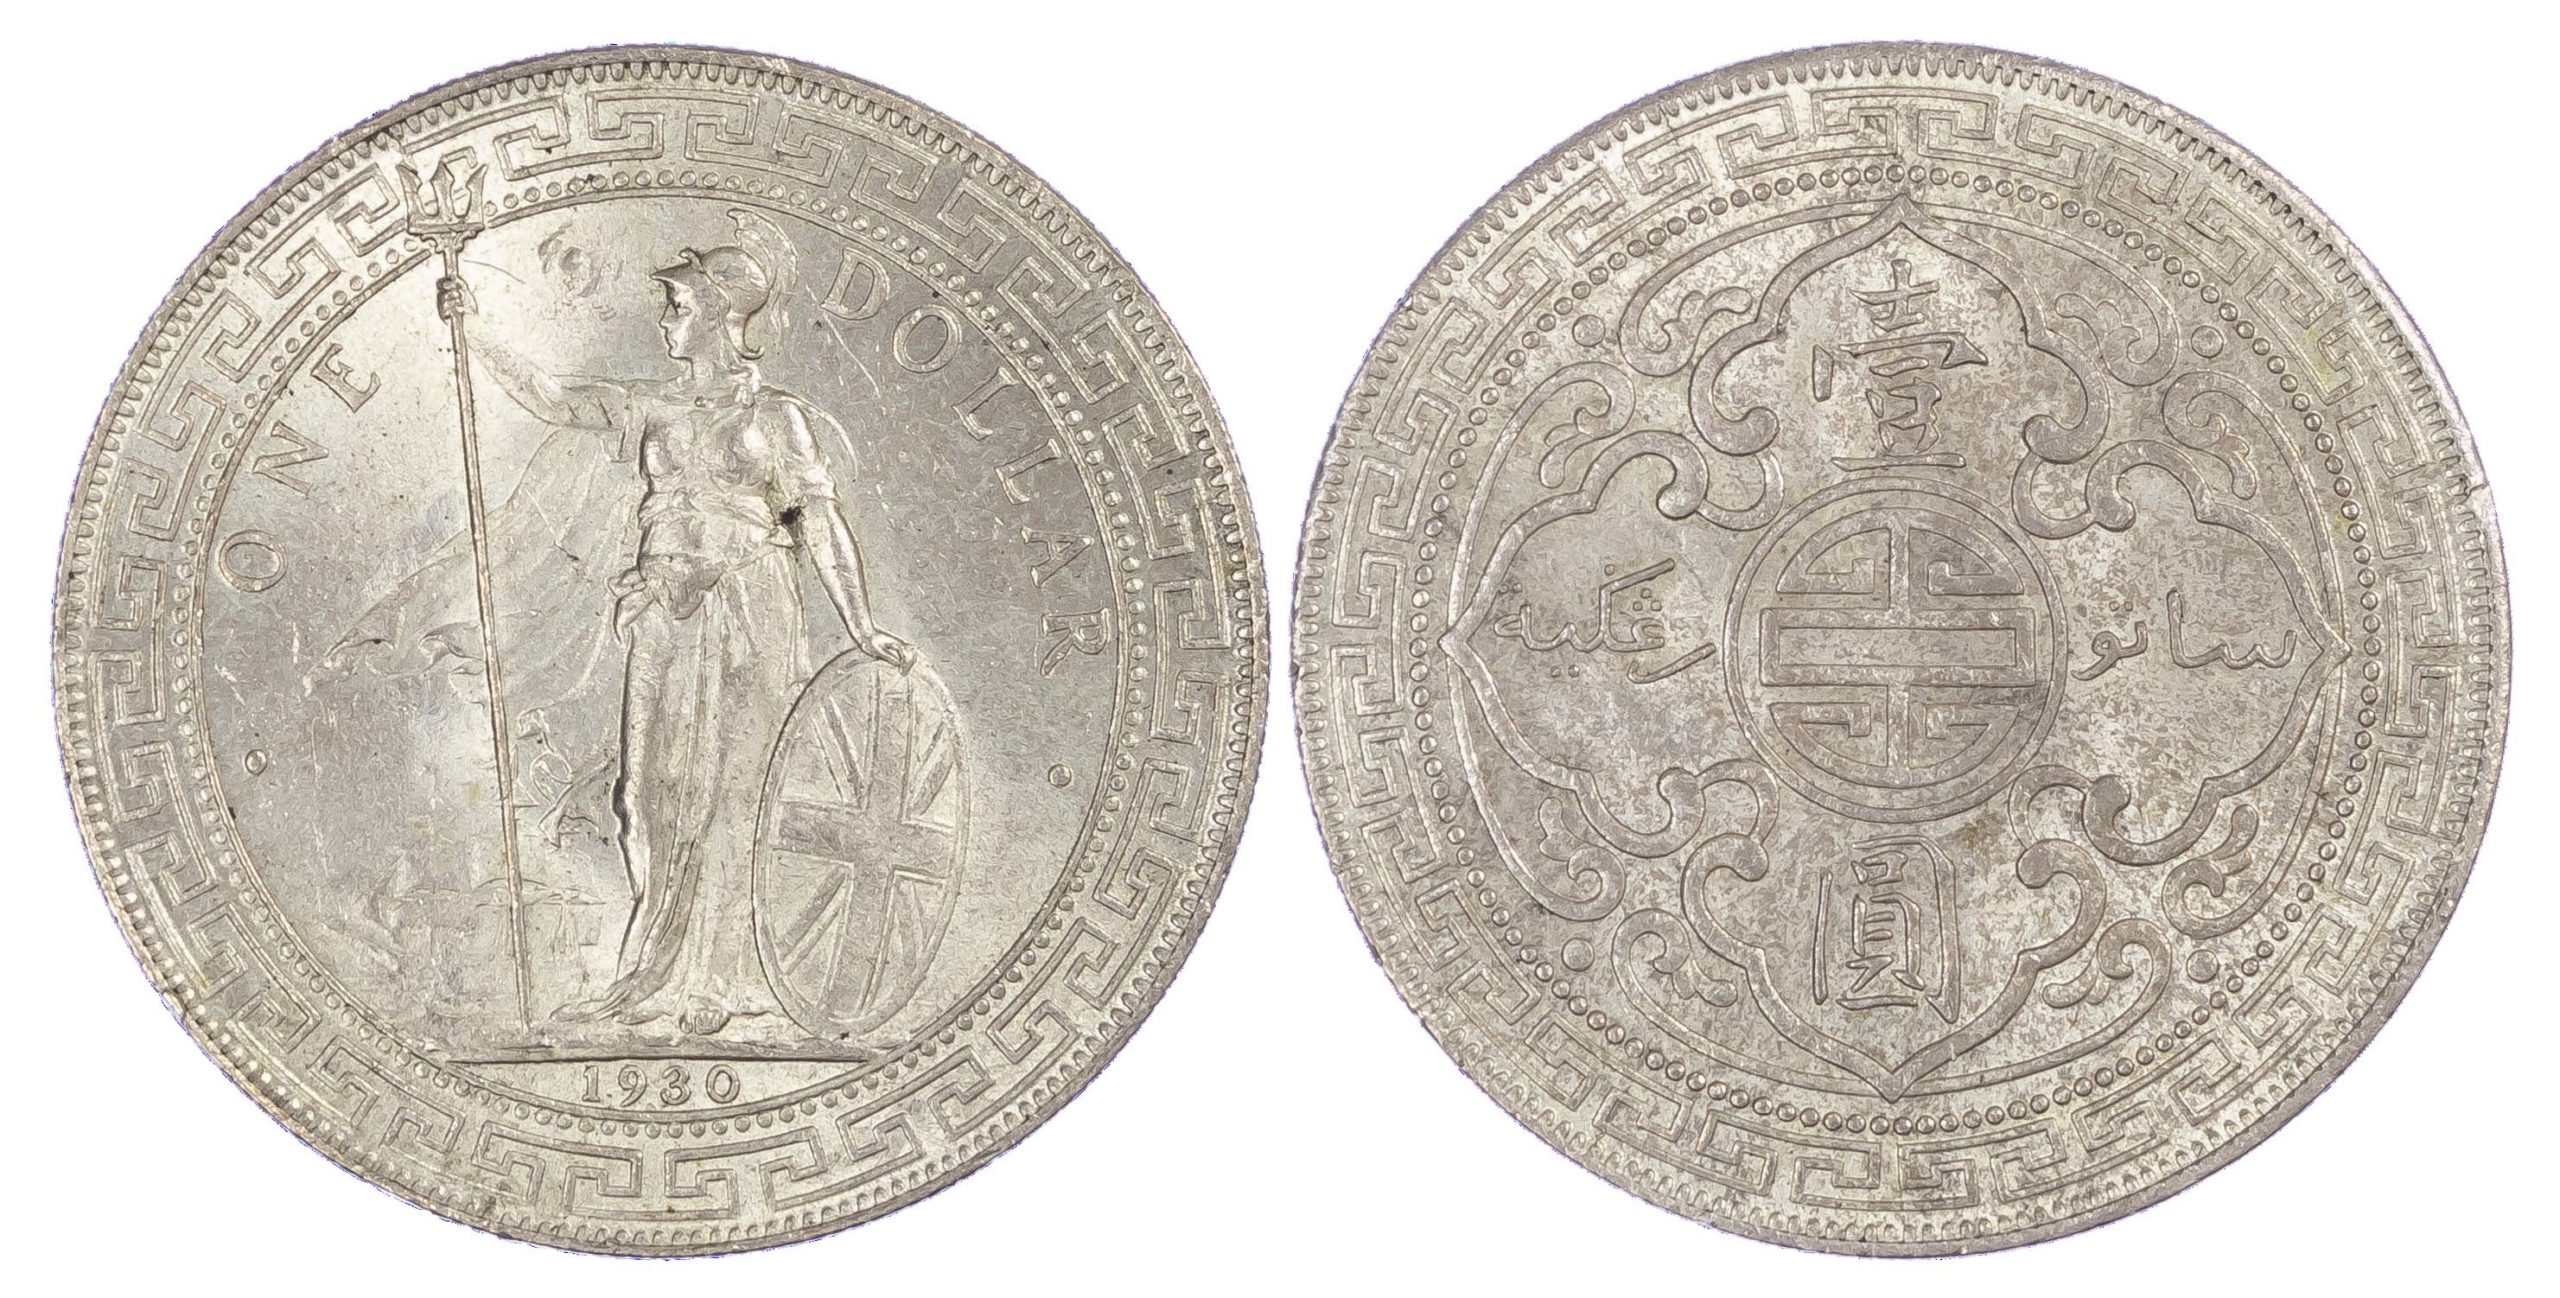 Hong Kong, George V (1910-1936), silver Trade Dollar, 1930